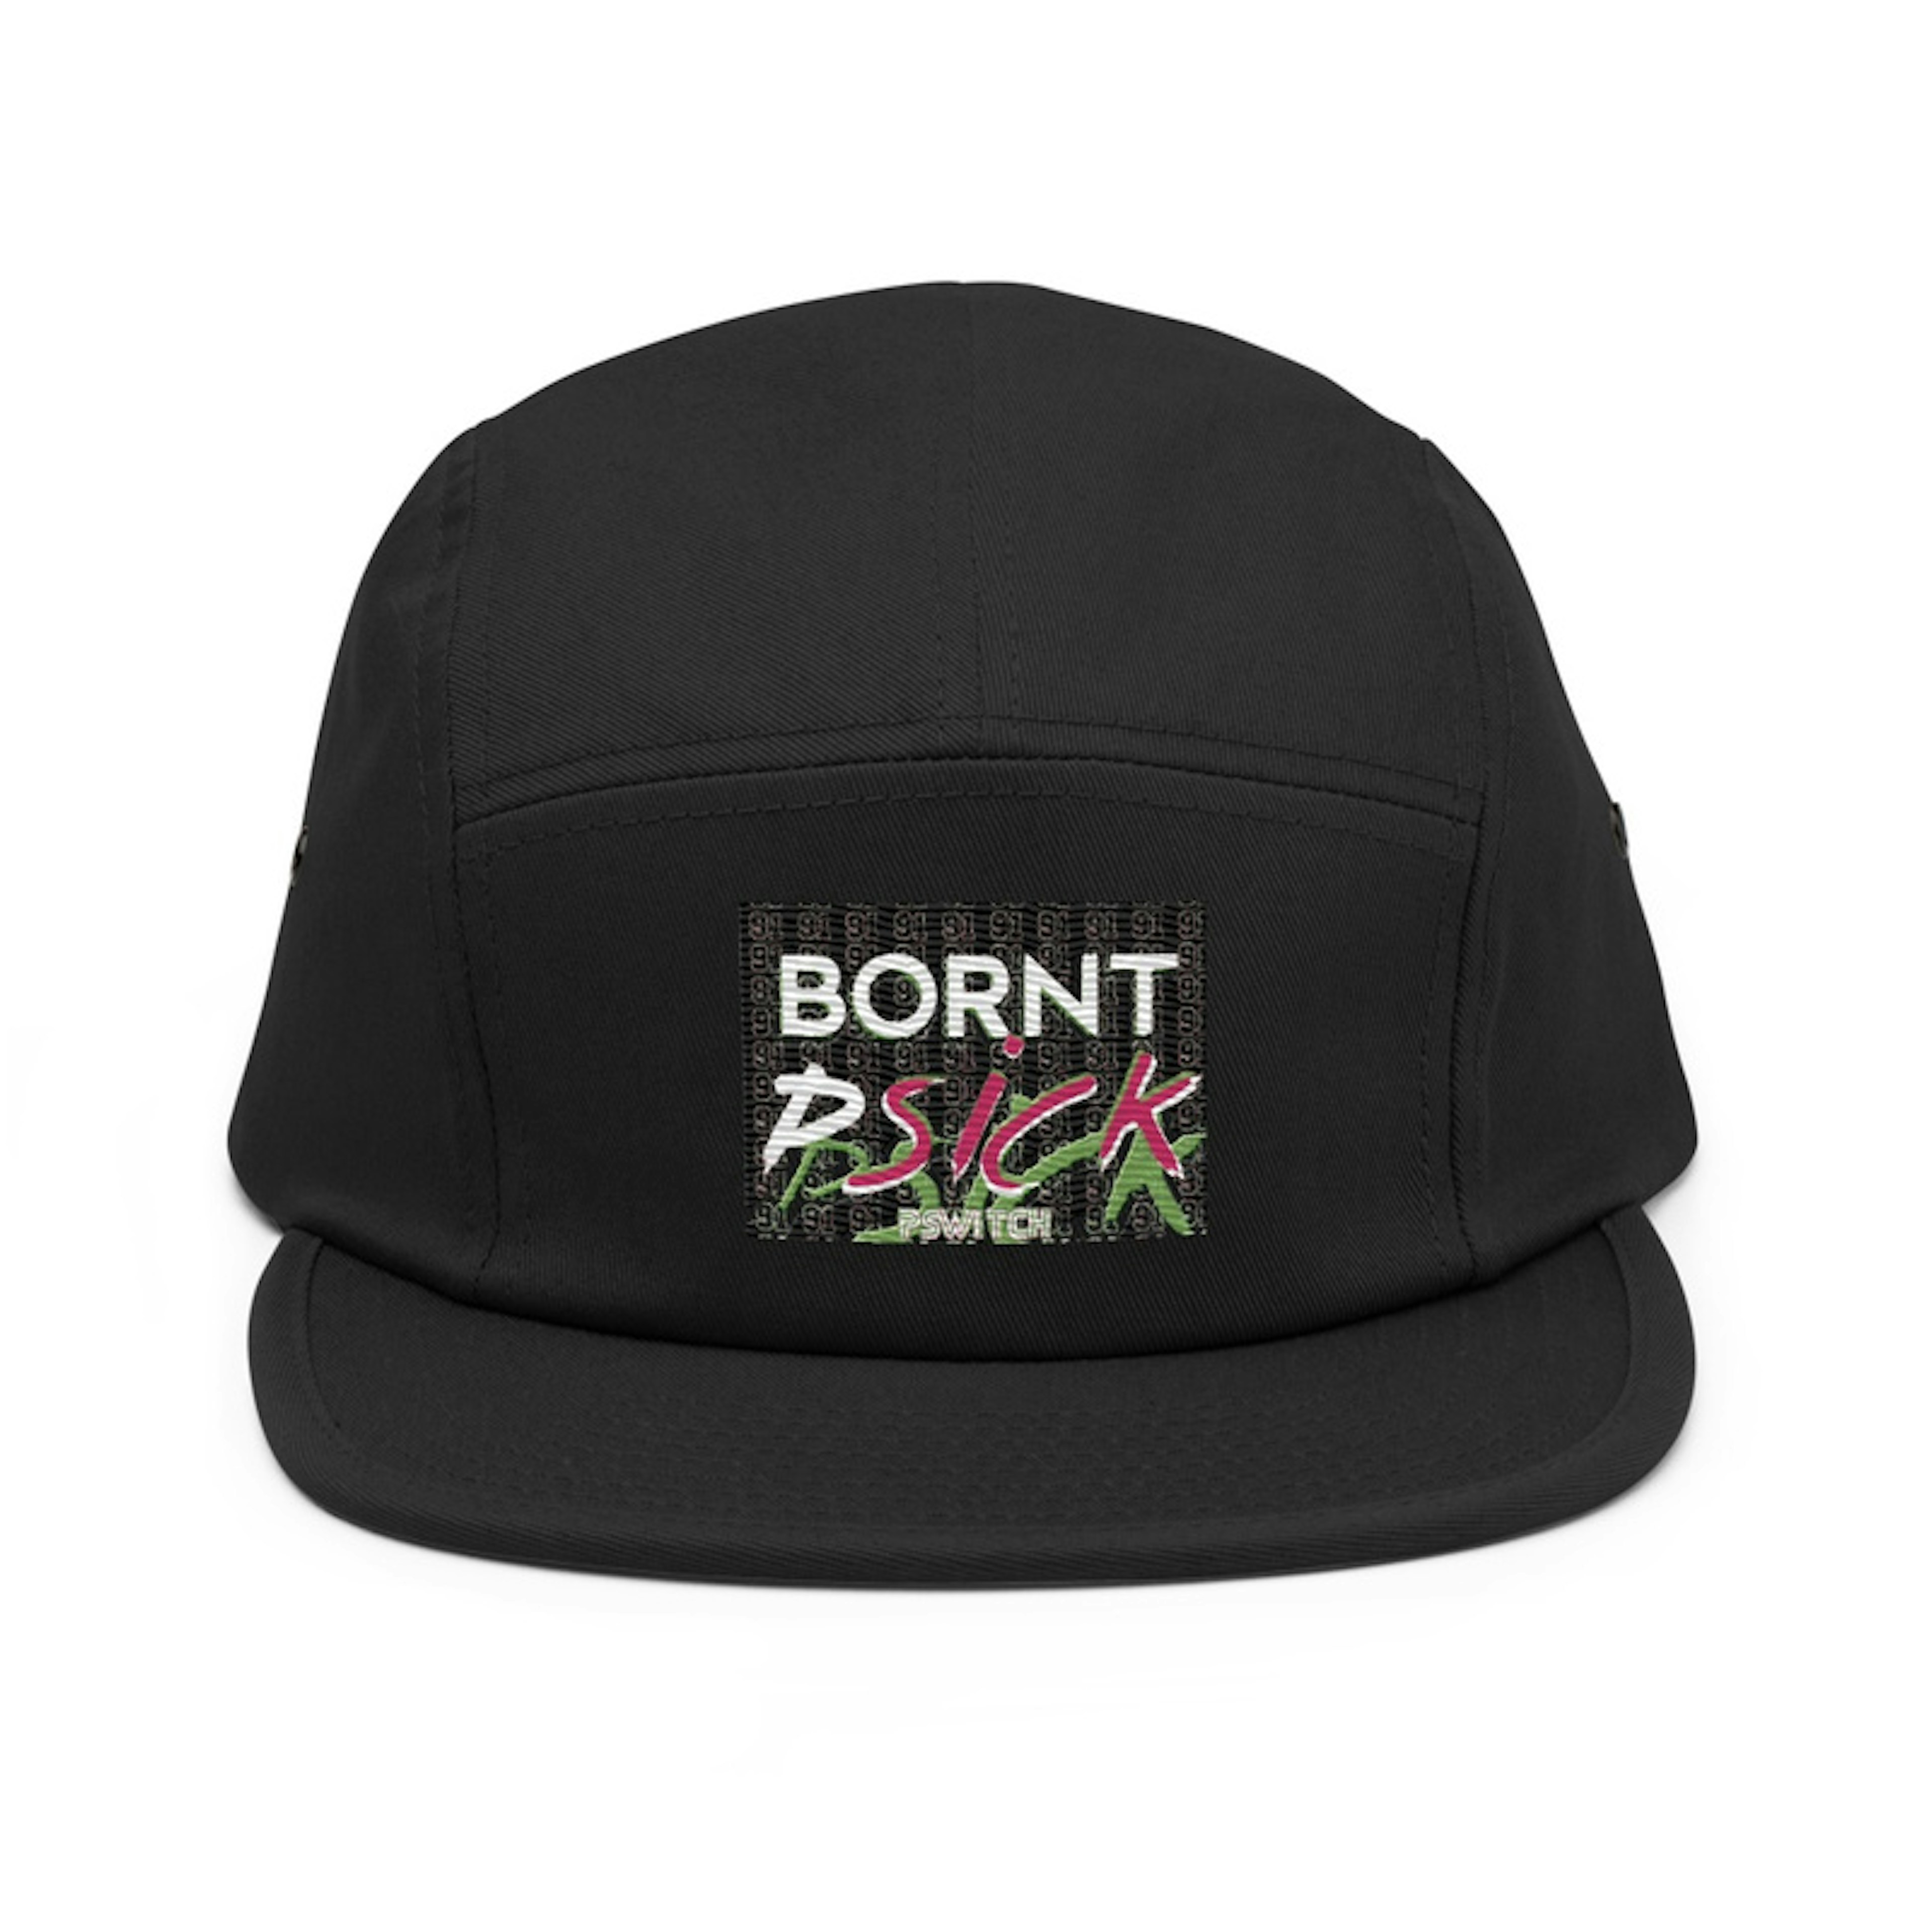 BORNT PSICK Cap